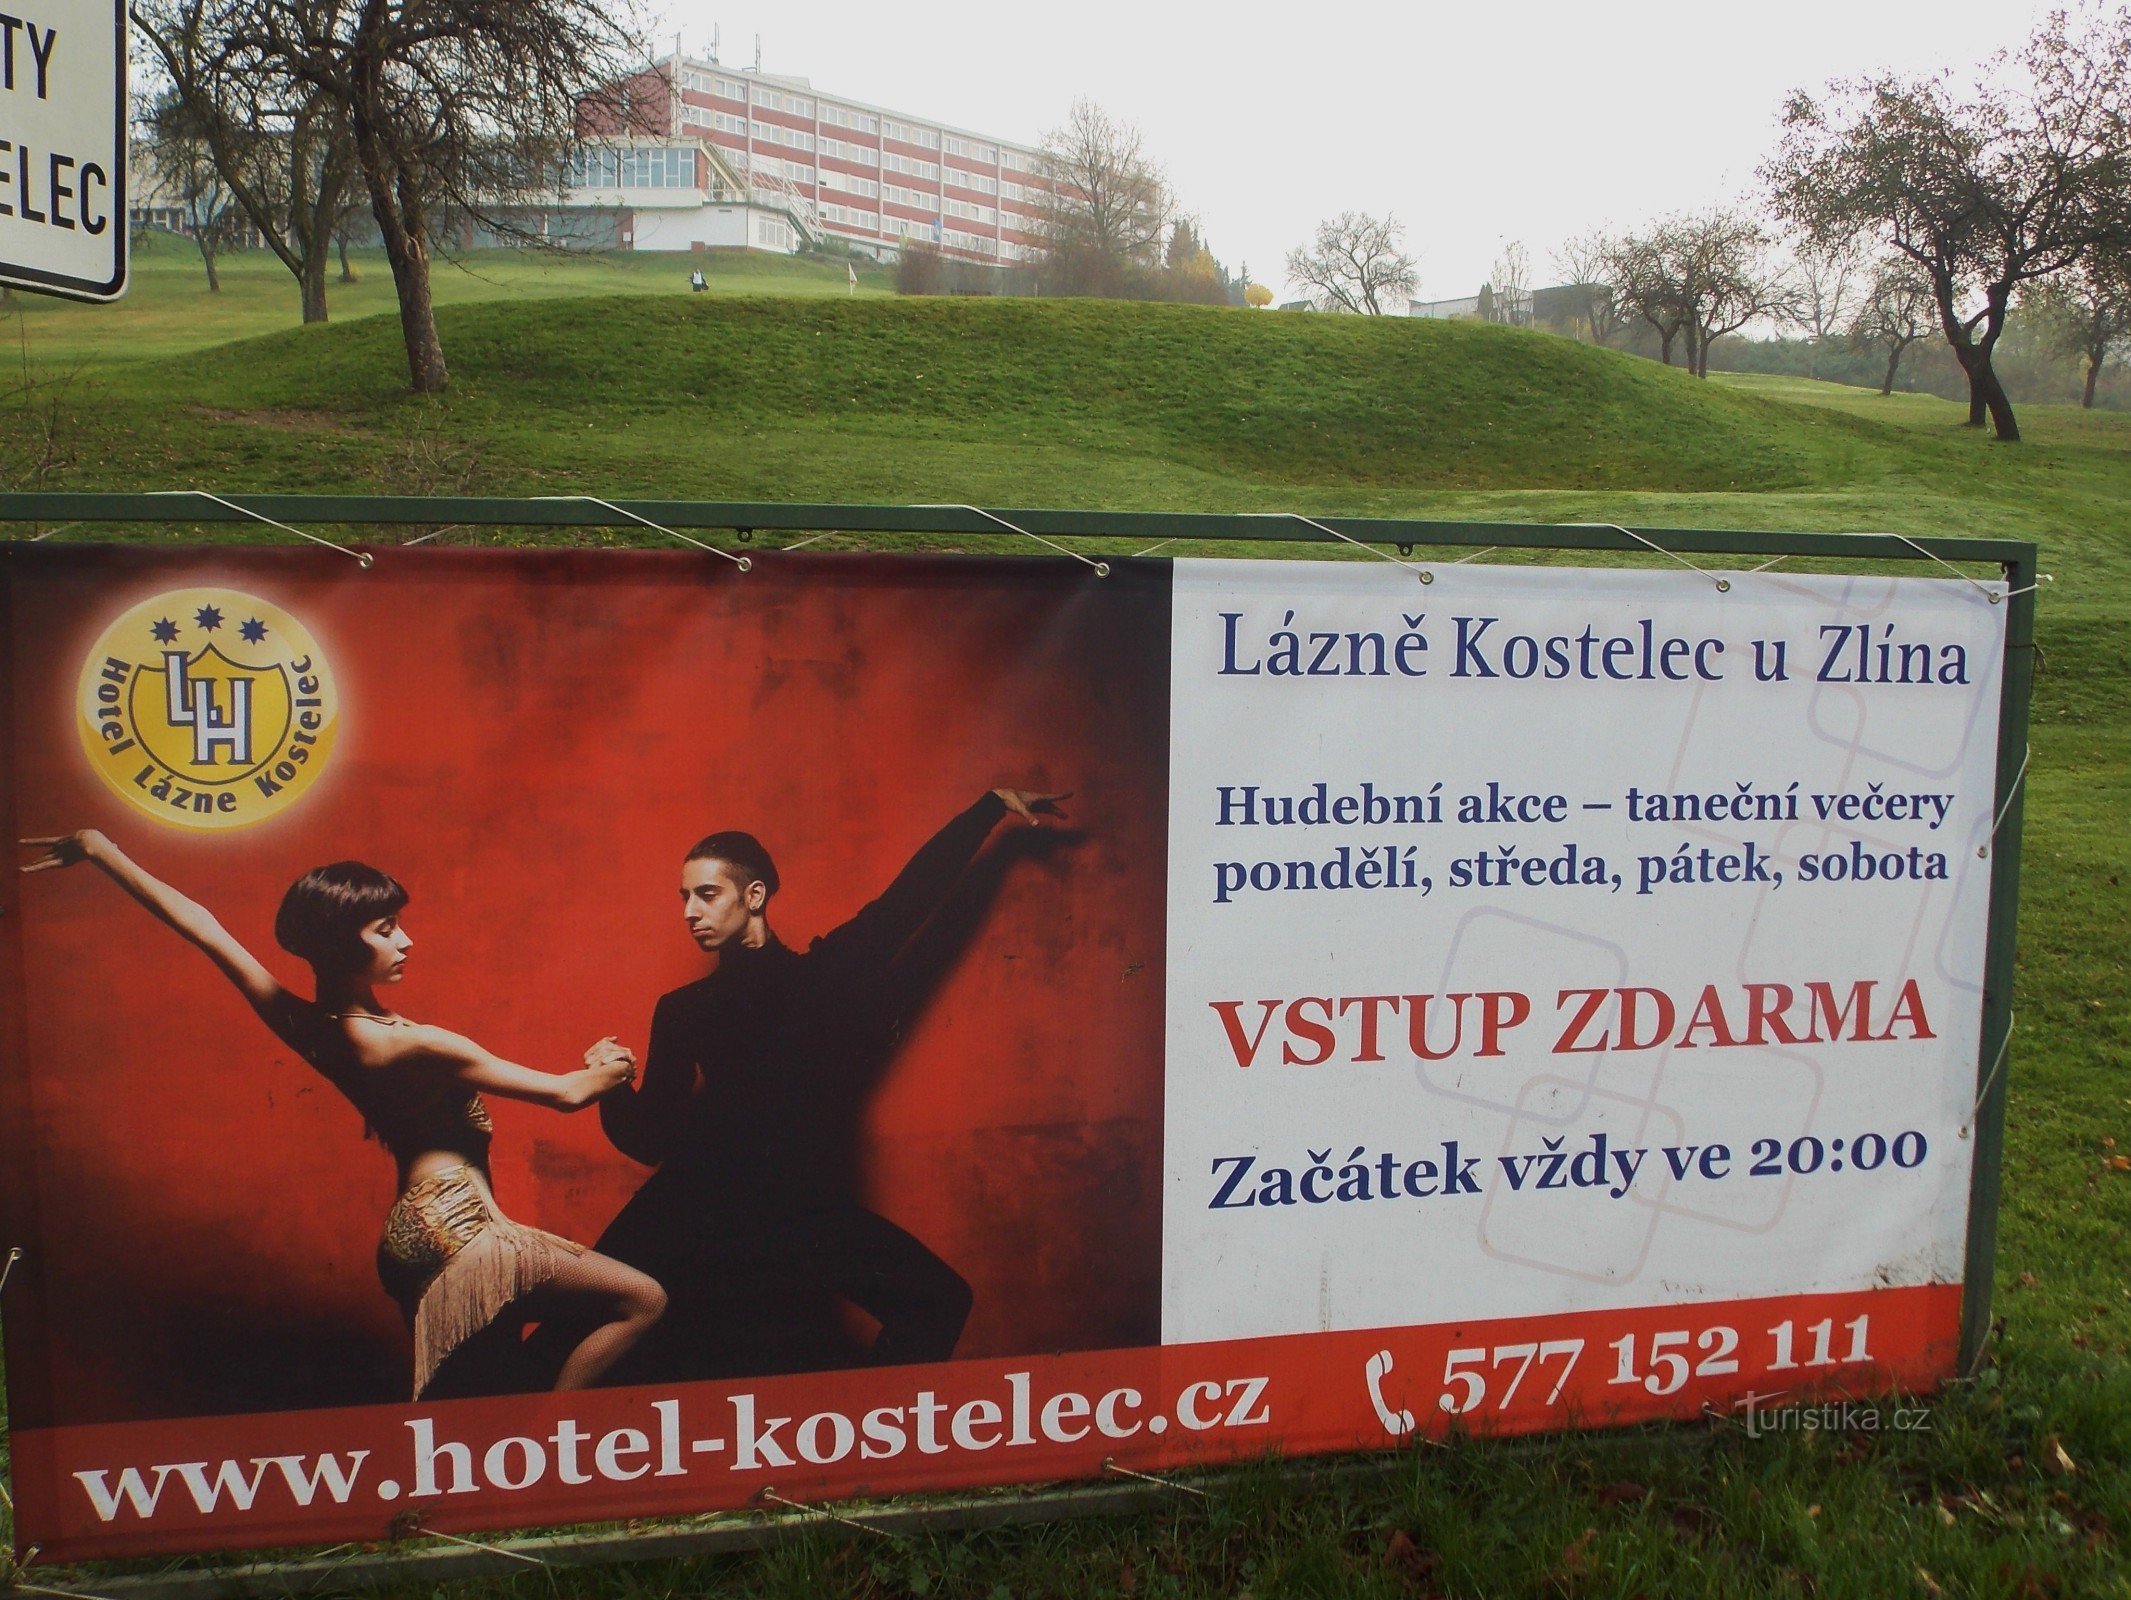 For sundhed og afslapning, gå til Koselec spa nær Zlín